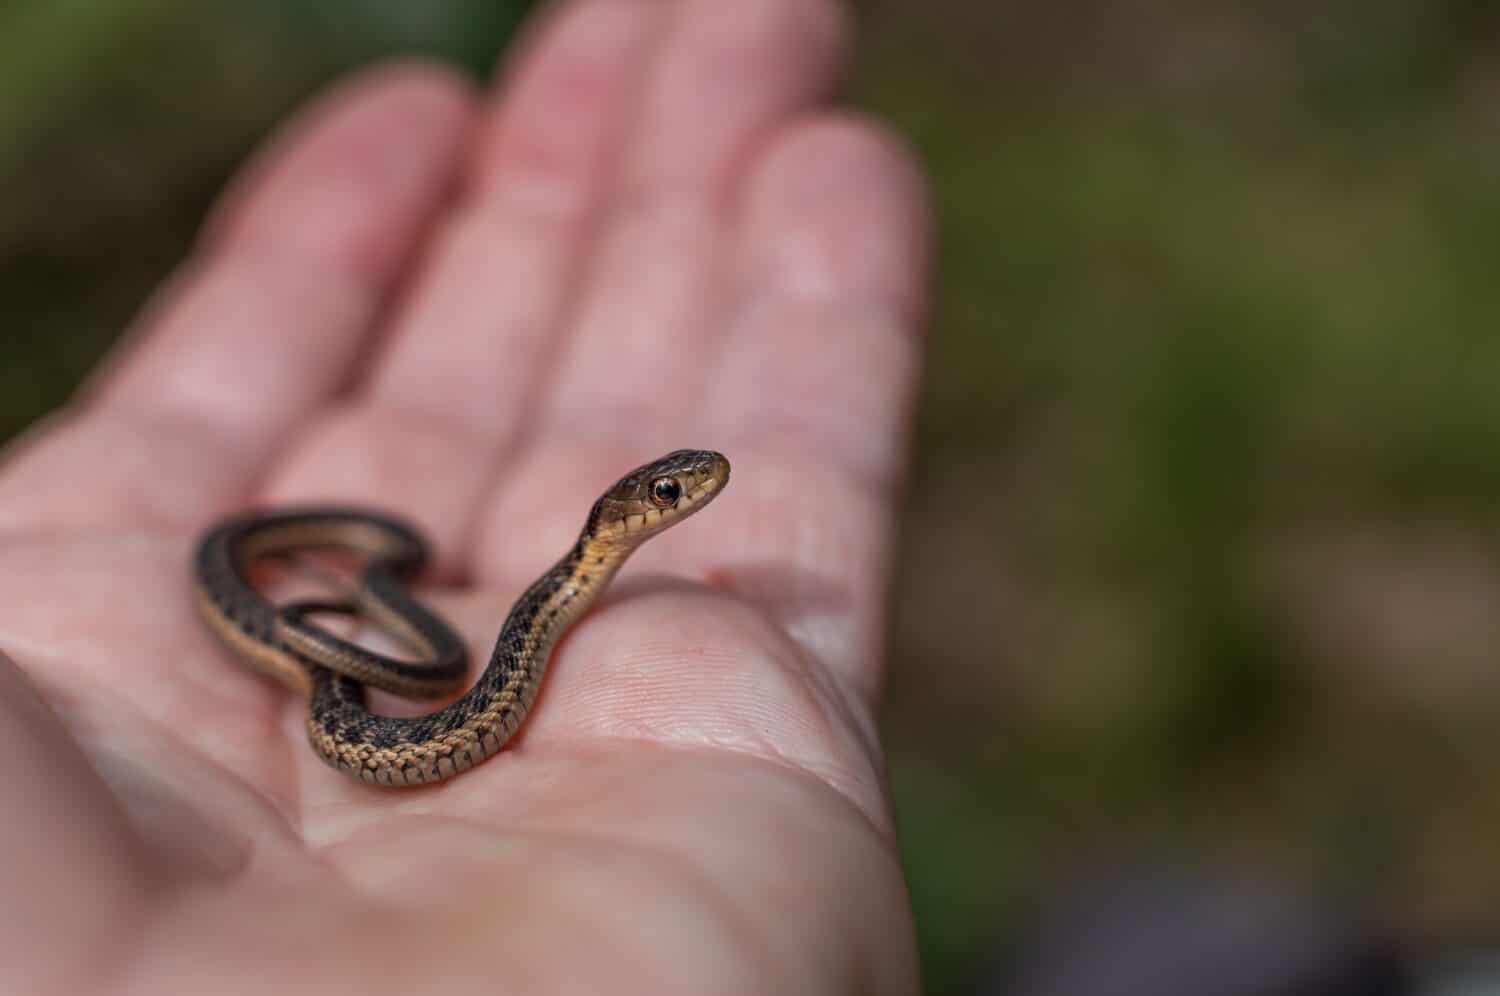 Baby garter snake in hand 